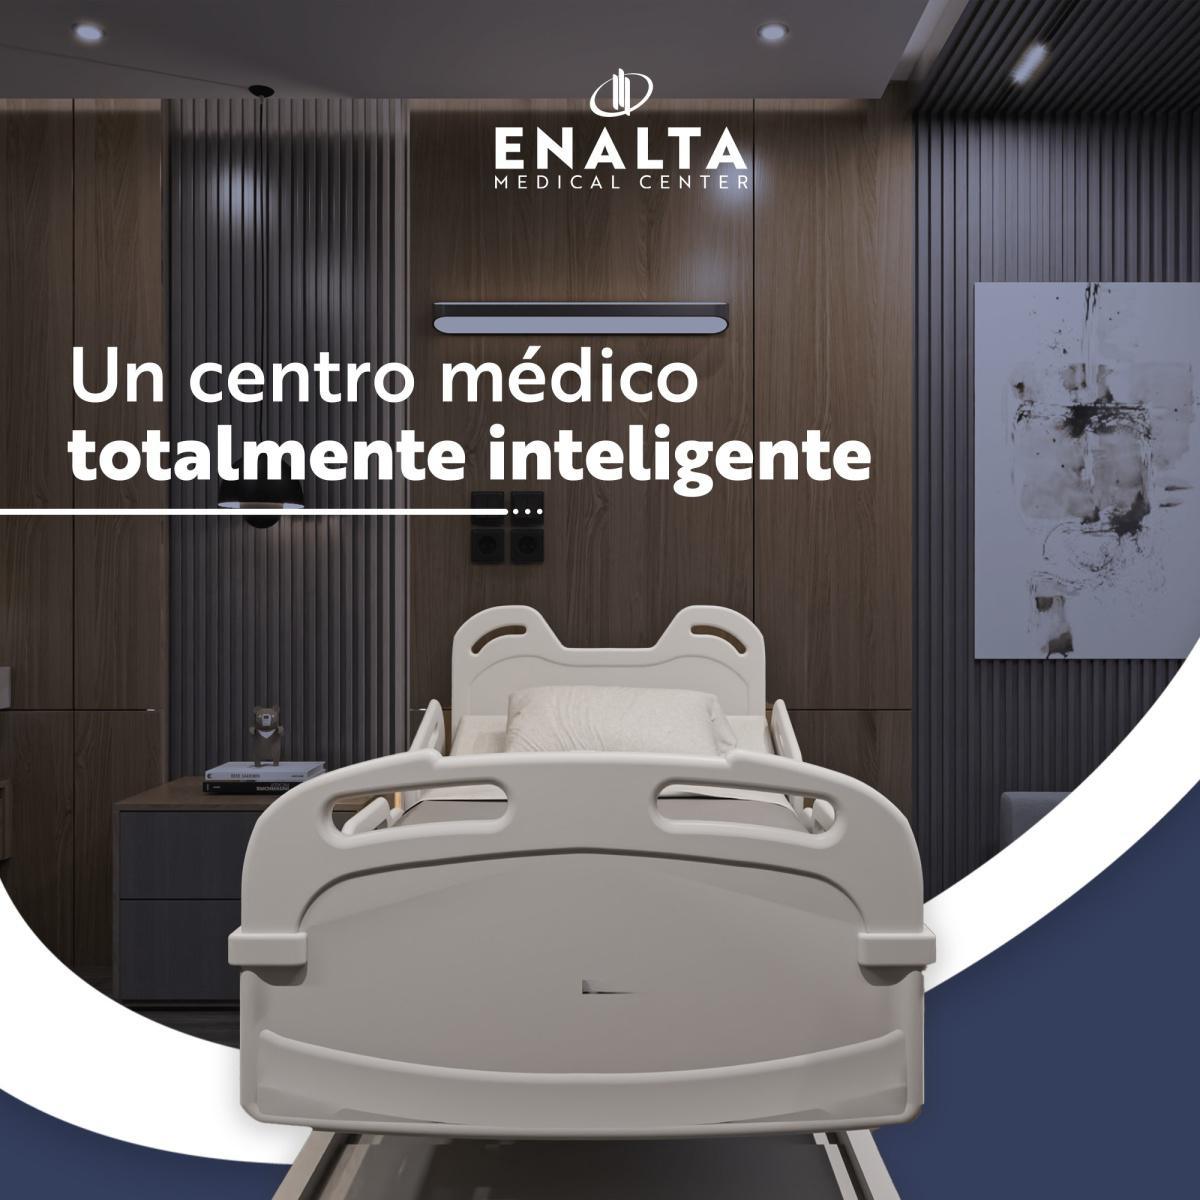 Enalta Medical Center